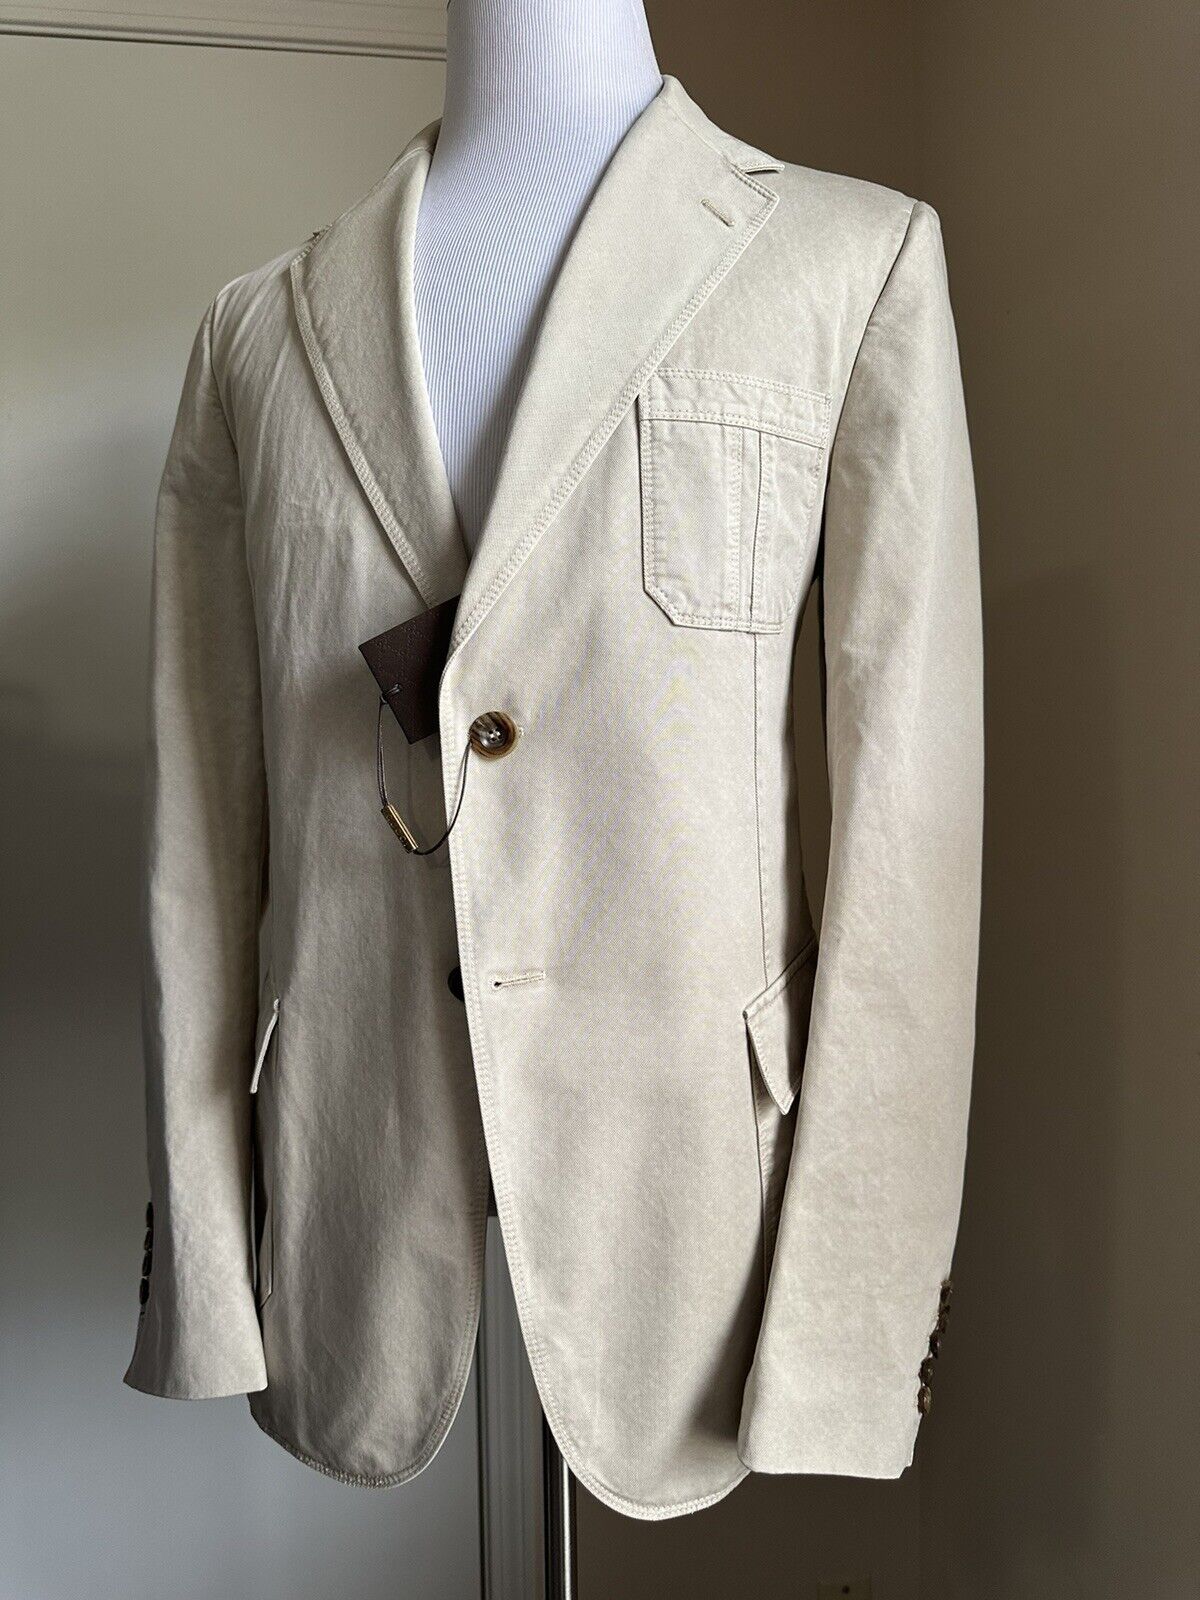 Мужской спортивный пиджак Gucci цвета слоновой кости 1580 долларов NWT 44R US/54R EU Италия